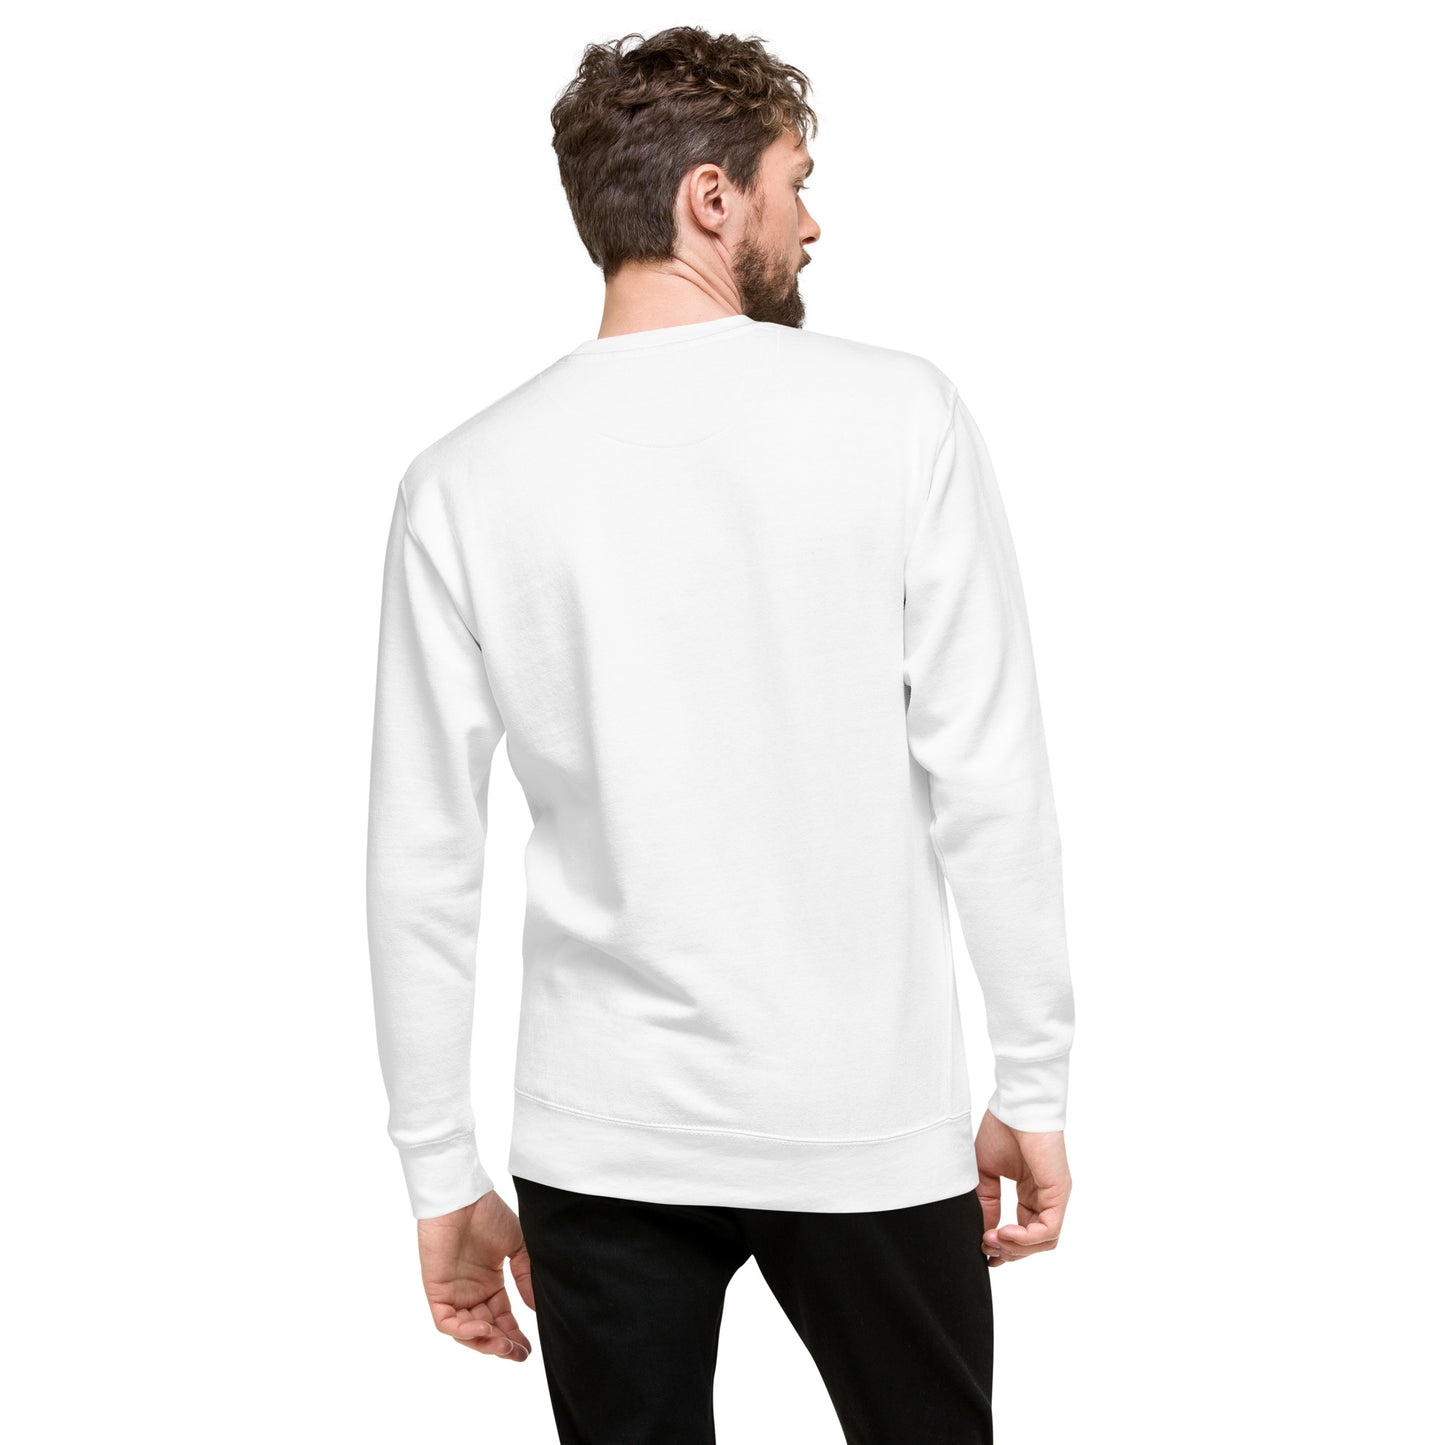 Big Smile Fleece in White - Sweatshirt